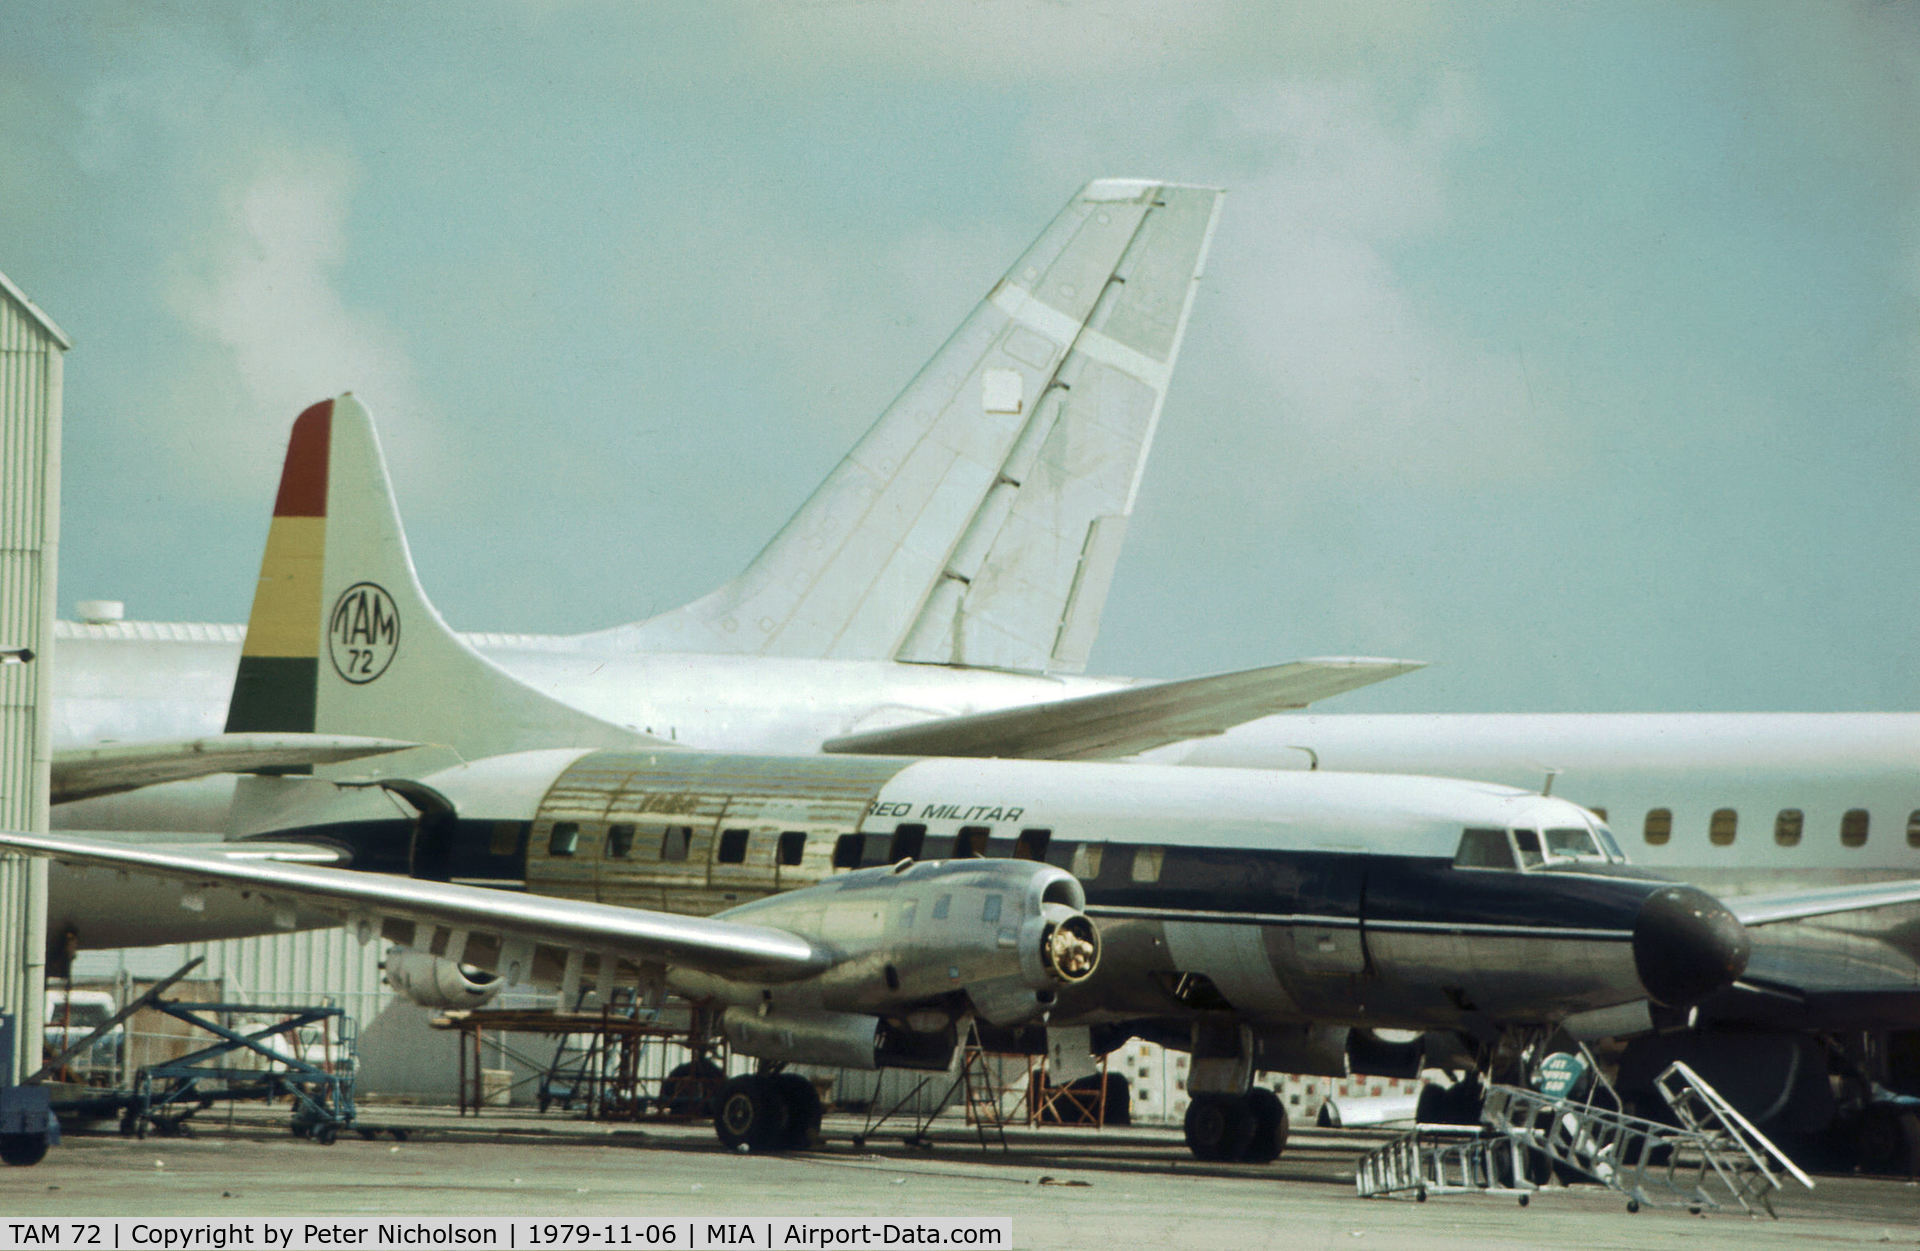 TAM 72, 1967 Convair 580 C/N 41, Bolivian Air Force Convair 580 as seen at Miami in November 1979.